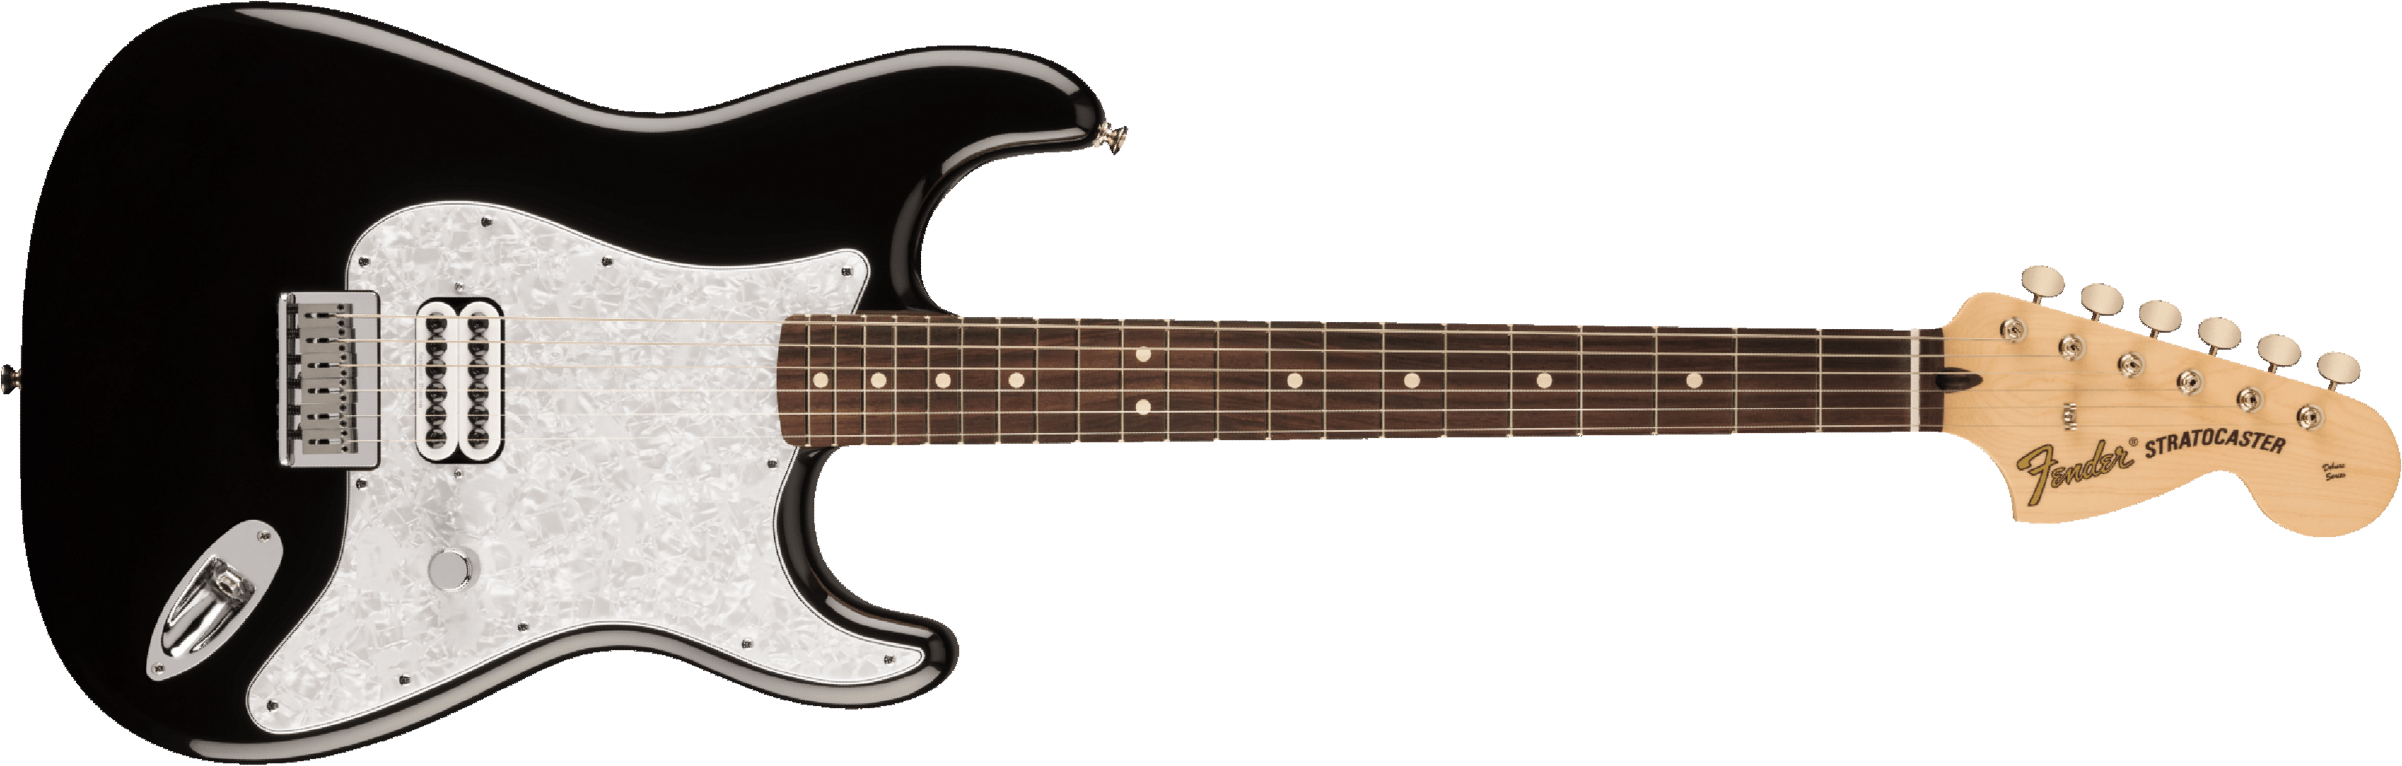 Fender Tom Delonge Ltd Mex Signature 1h Ht Rw - Black - E-Gitarre in Str-Form - Main picture